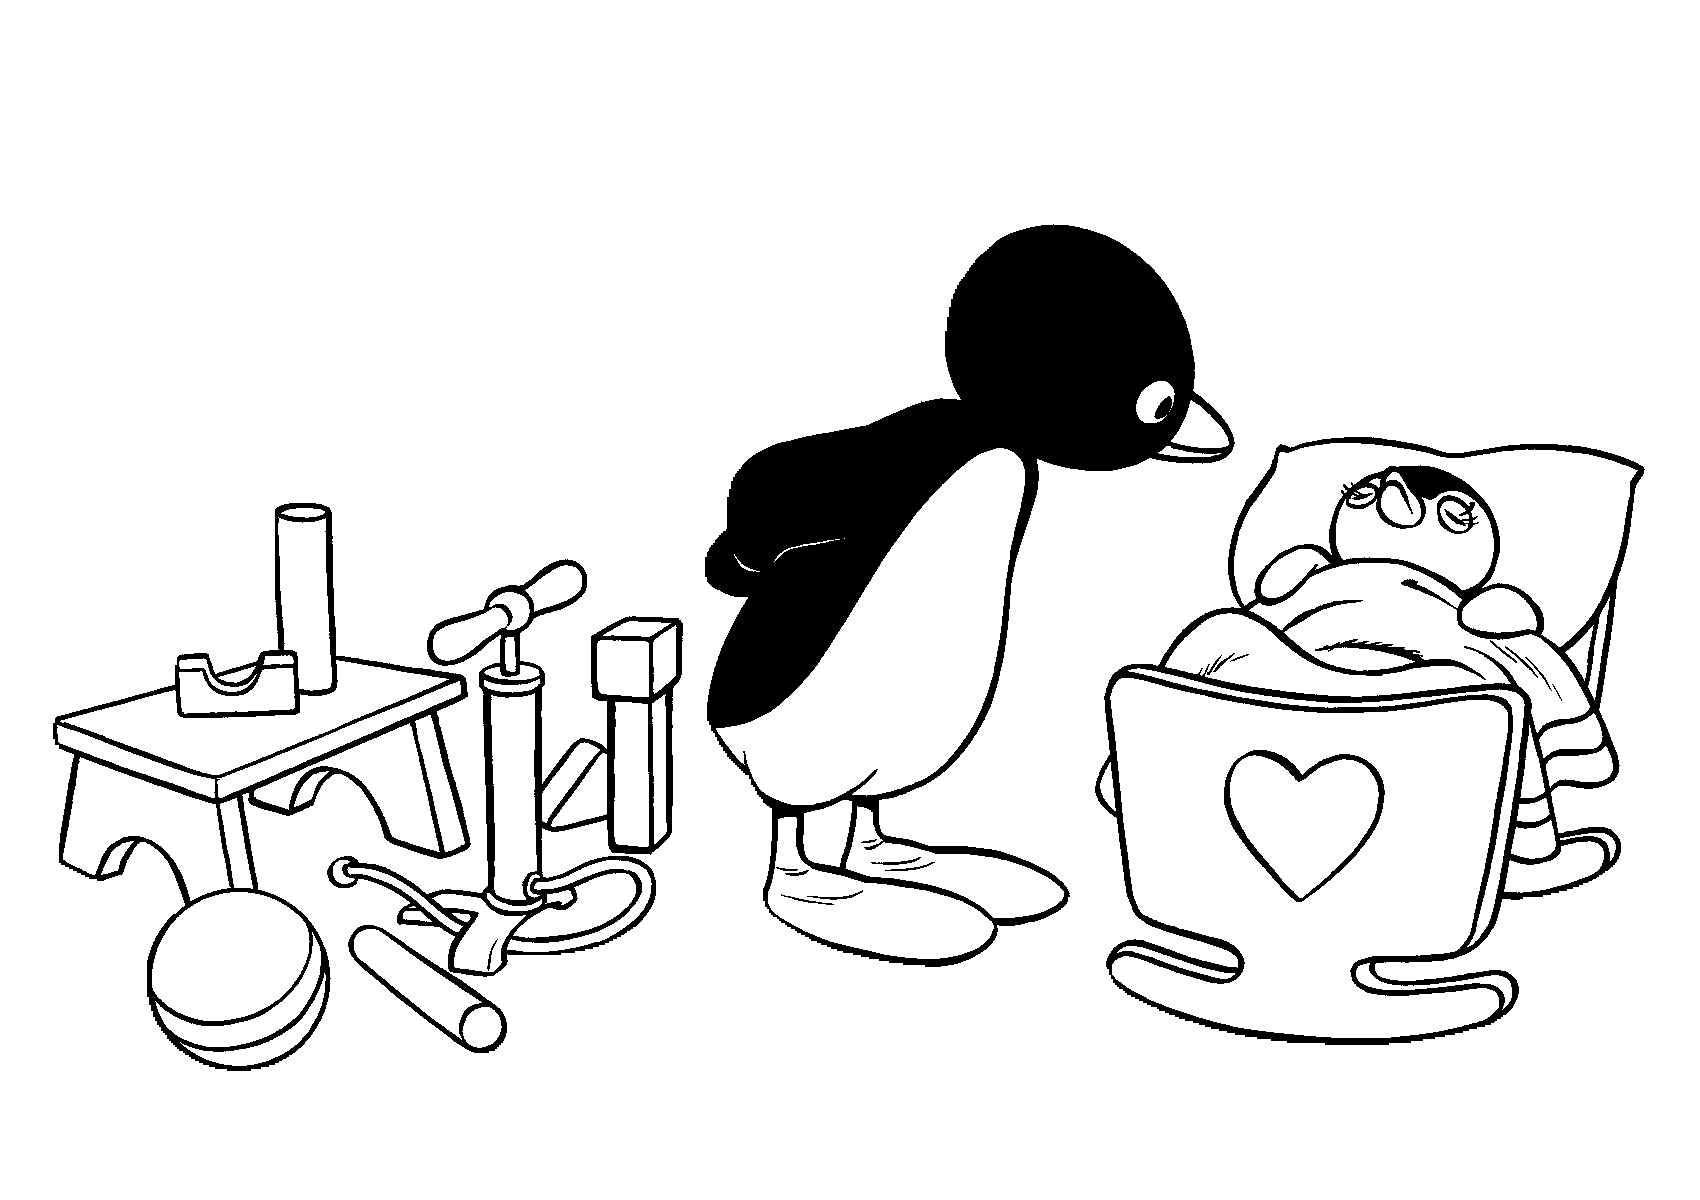 Disegno 9 di Pingu da stampare e colorare